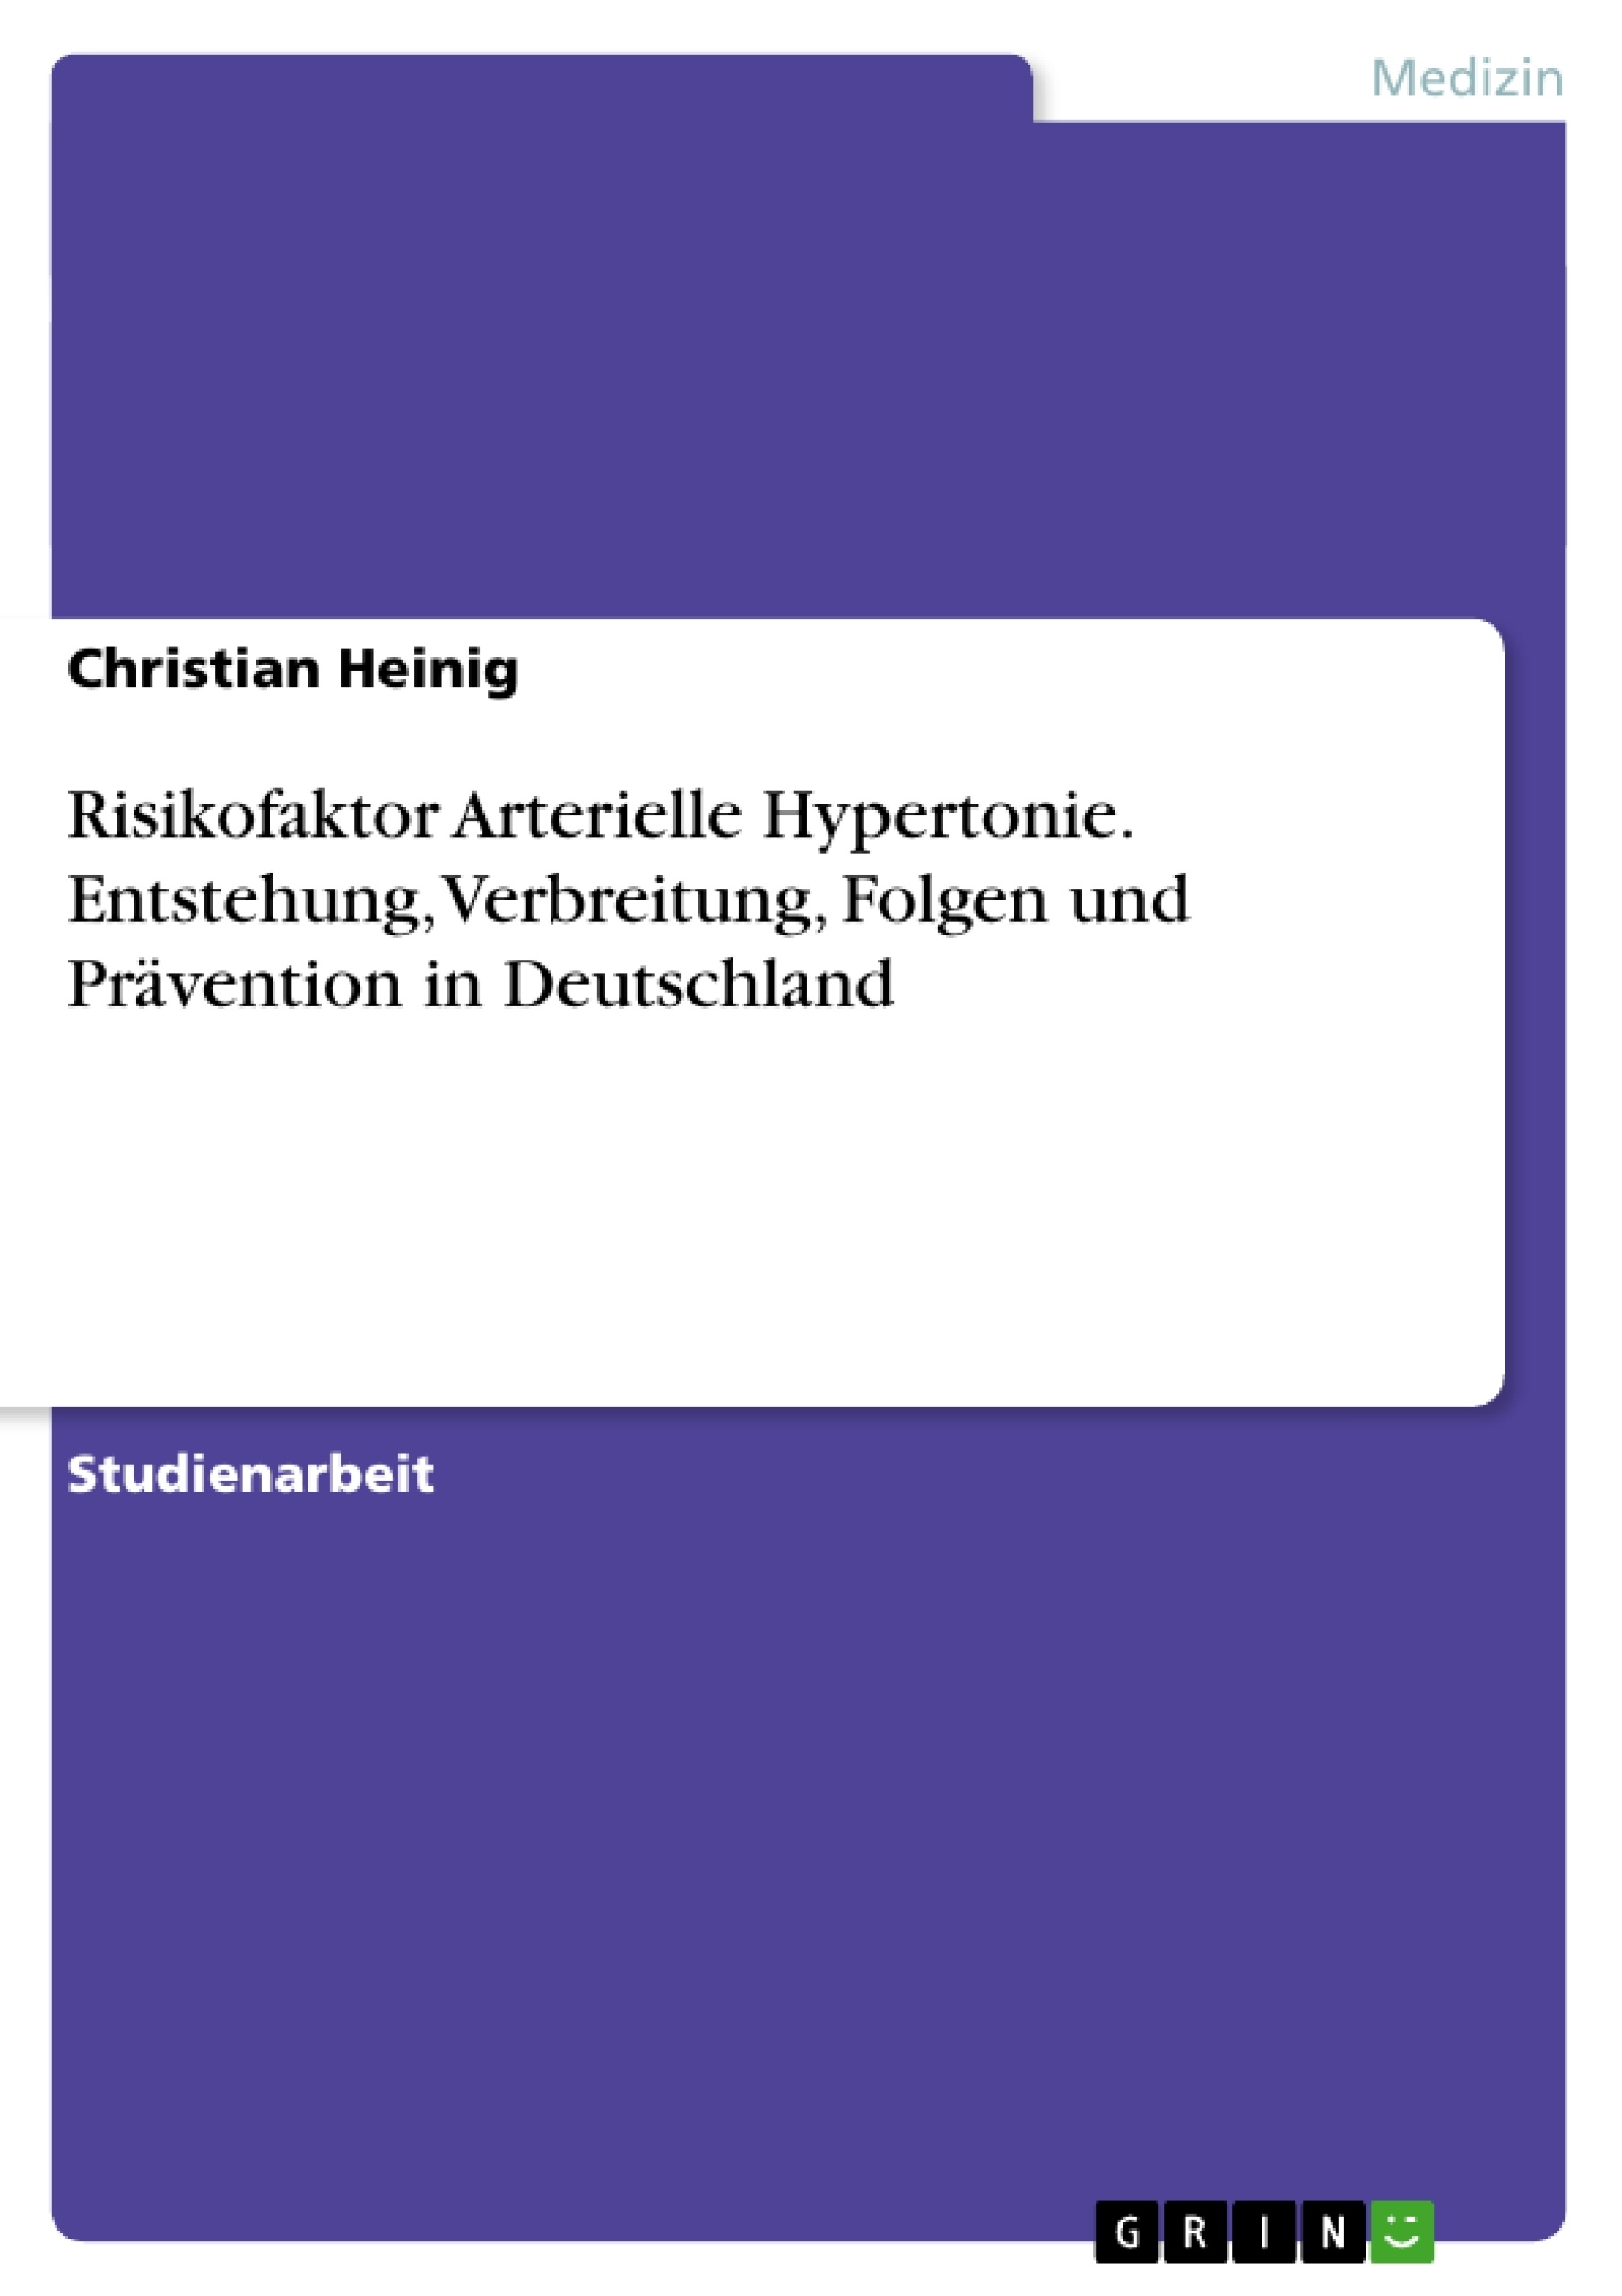 Title: Risikofaktor Arterielle Hypertonie. Entstehung, Verbreitung, Folgen und Prävention in Deutschland